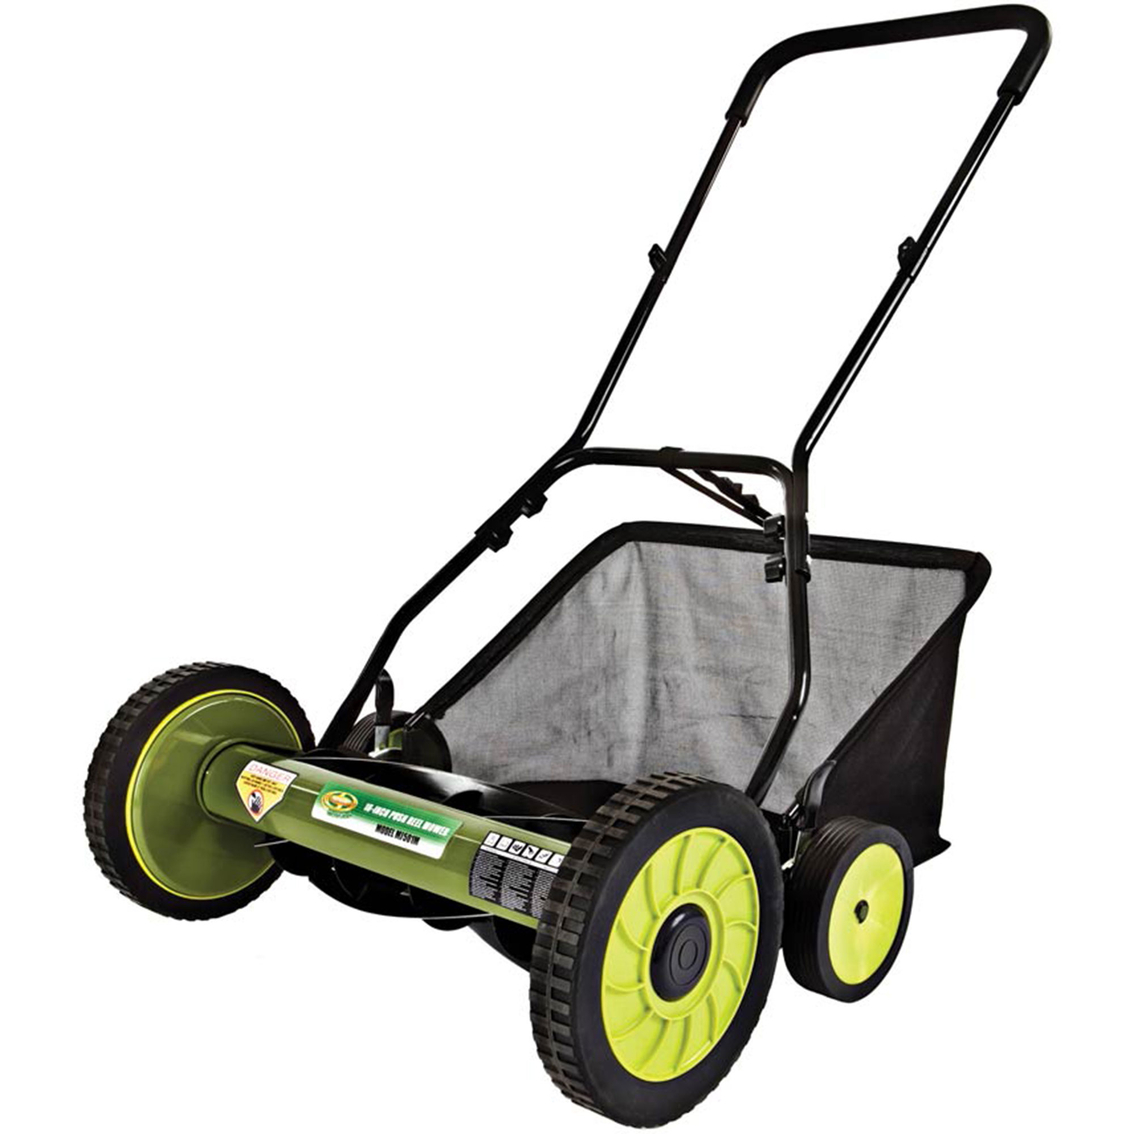 Sun Joe Mow Joe 18 In. Manual Reel Mower With Catcher, Mowers, Patio,  Garden & Garage